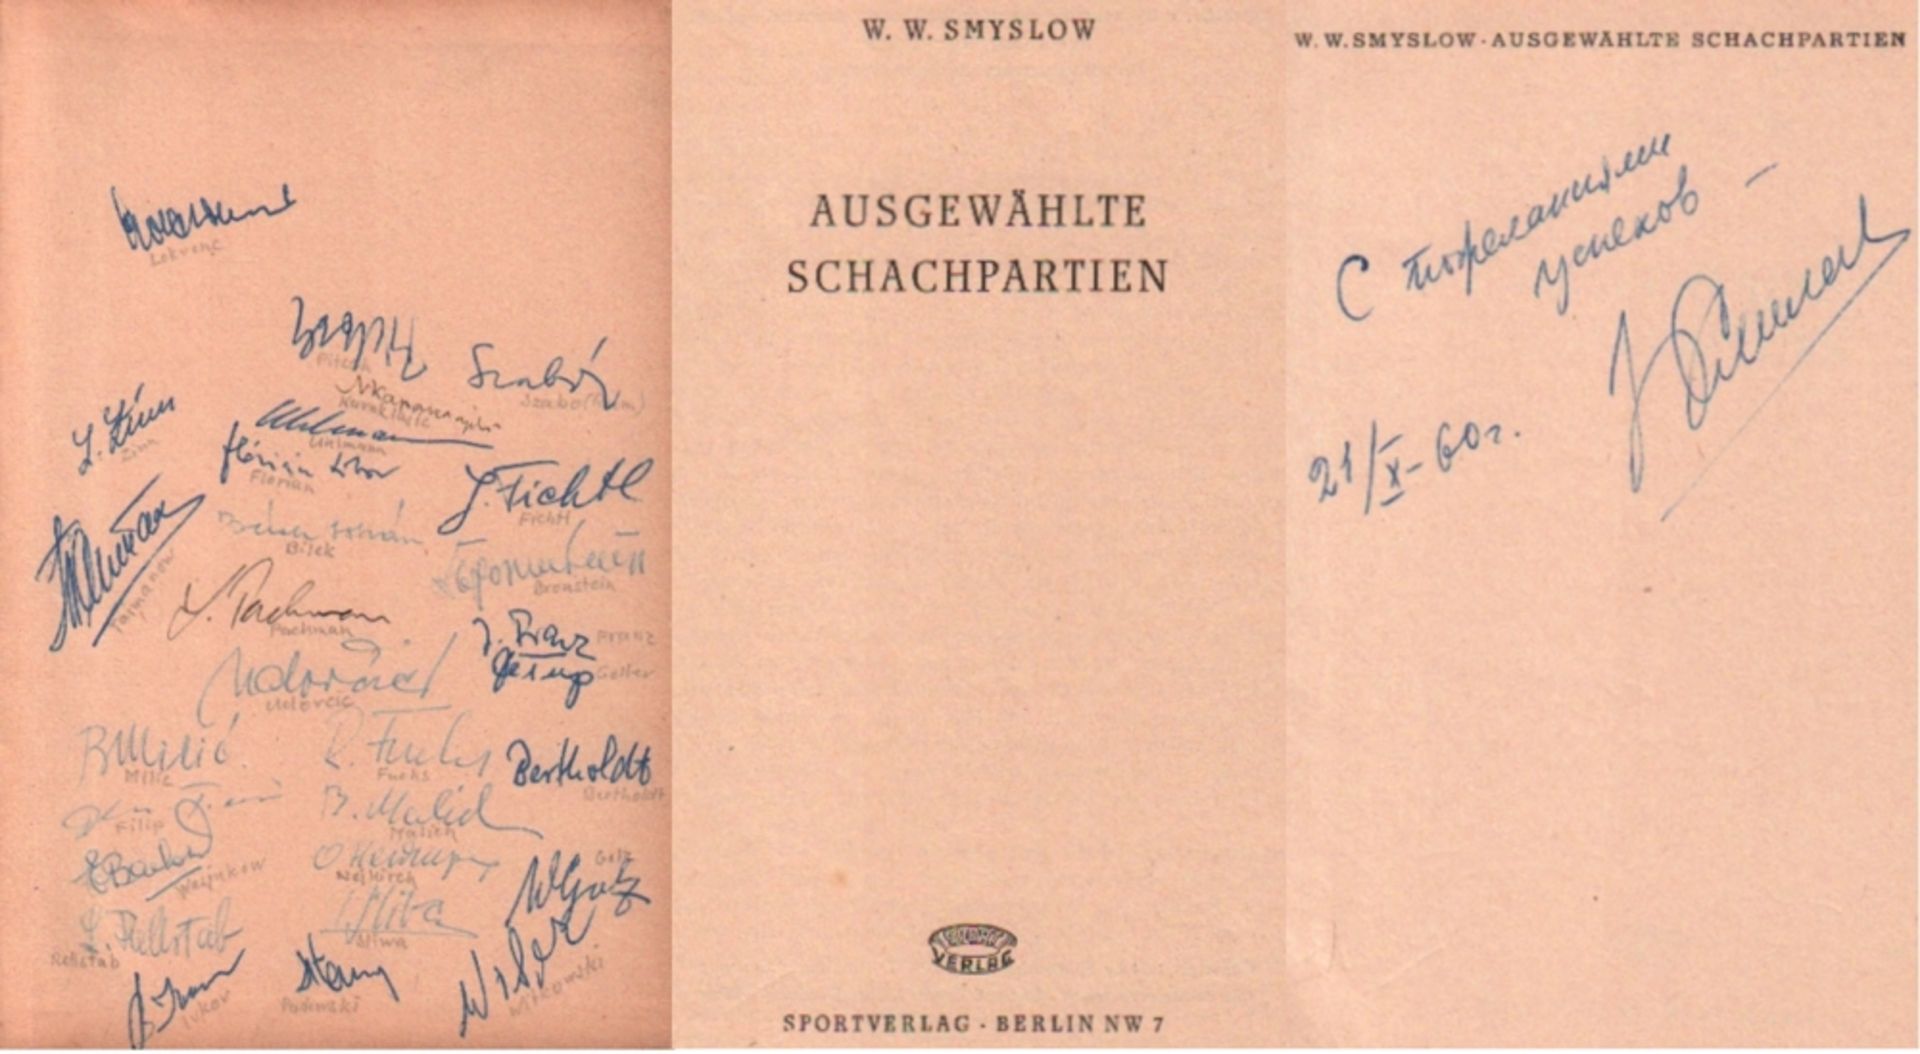 Smyslow, W. W. Ausgewählte Schachpartien. Bln., Sport, ca. 1954. 8°. Mit Diagrammen. 194 Seiten, 1